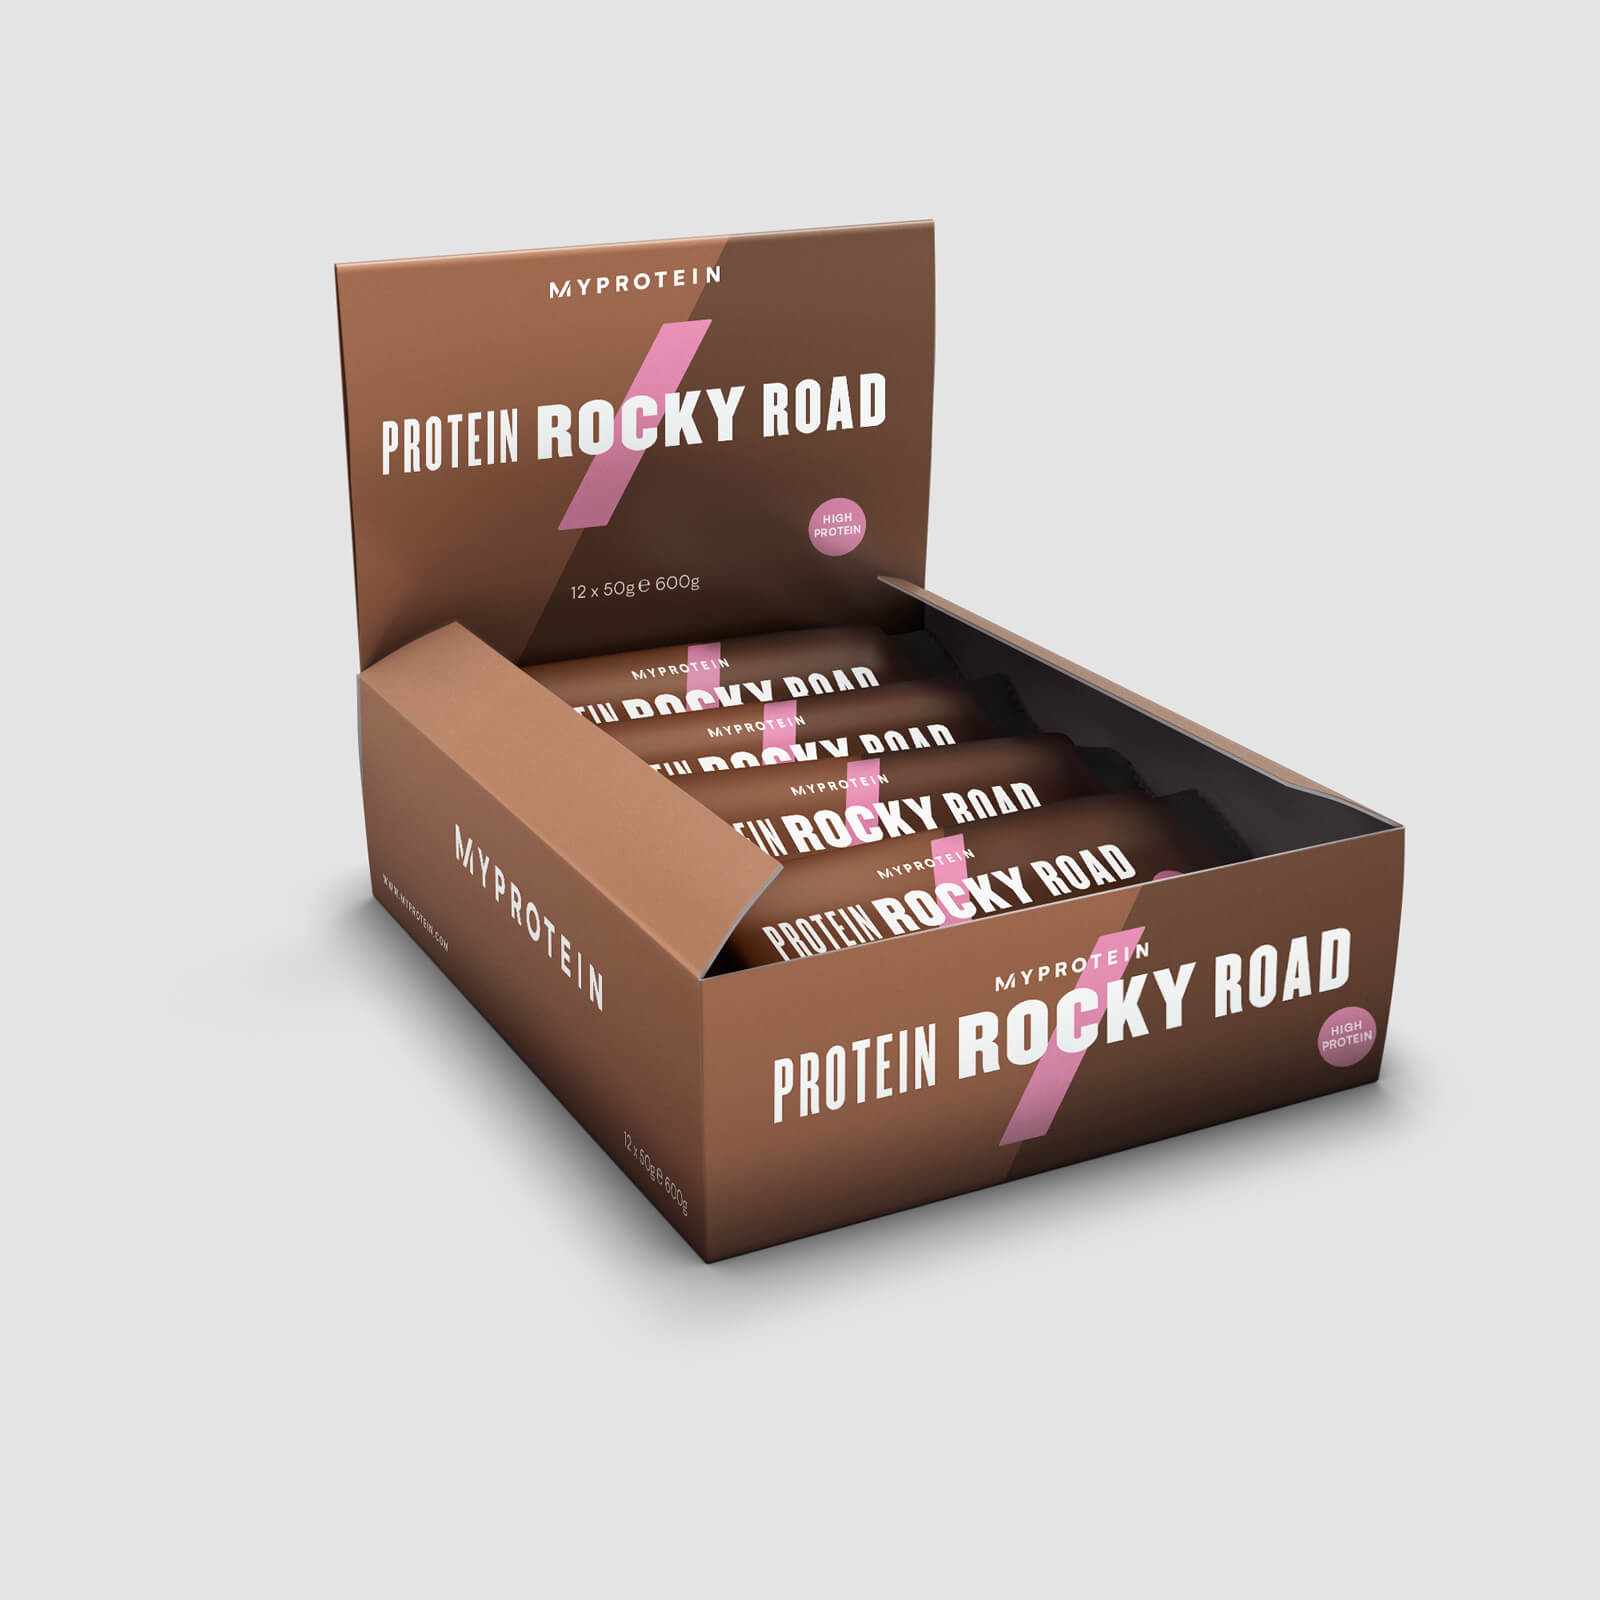 Myprotein Protein Rocky Road - 12 x 50g - Chocolate